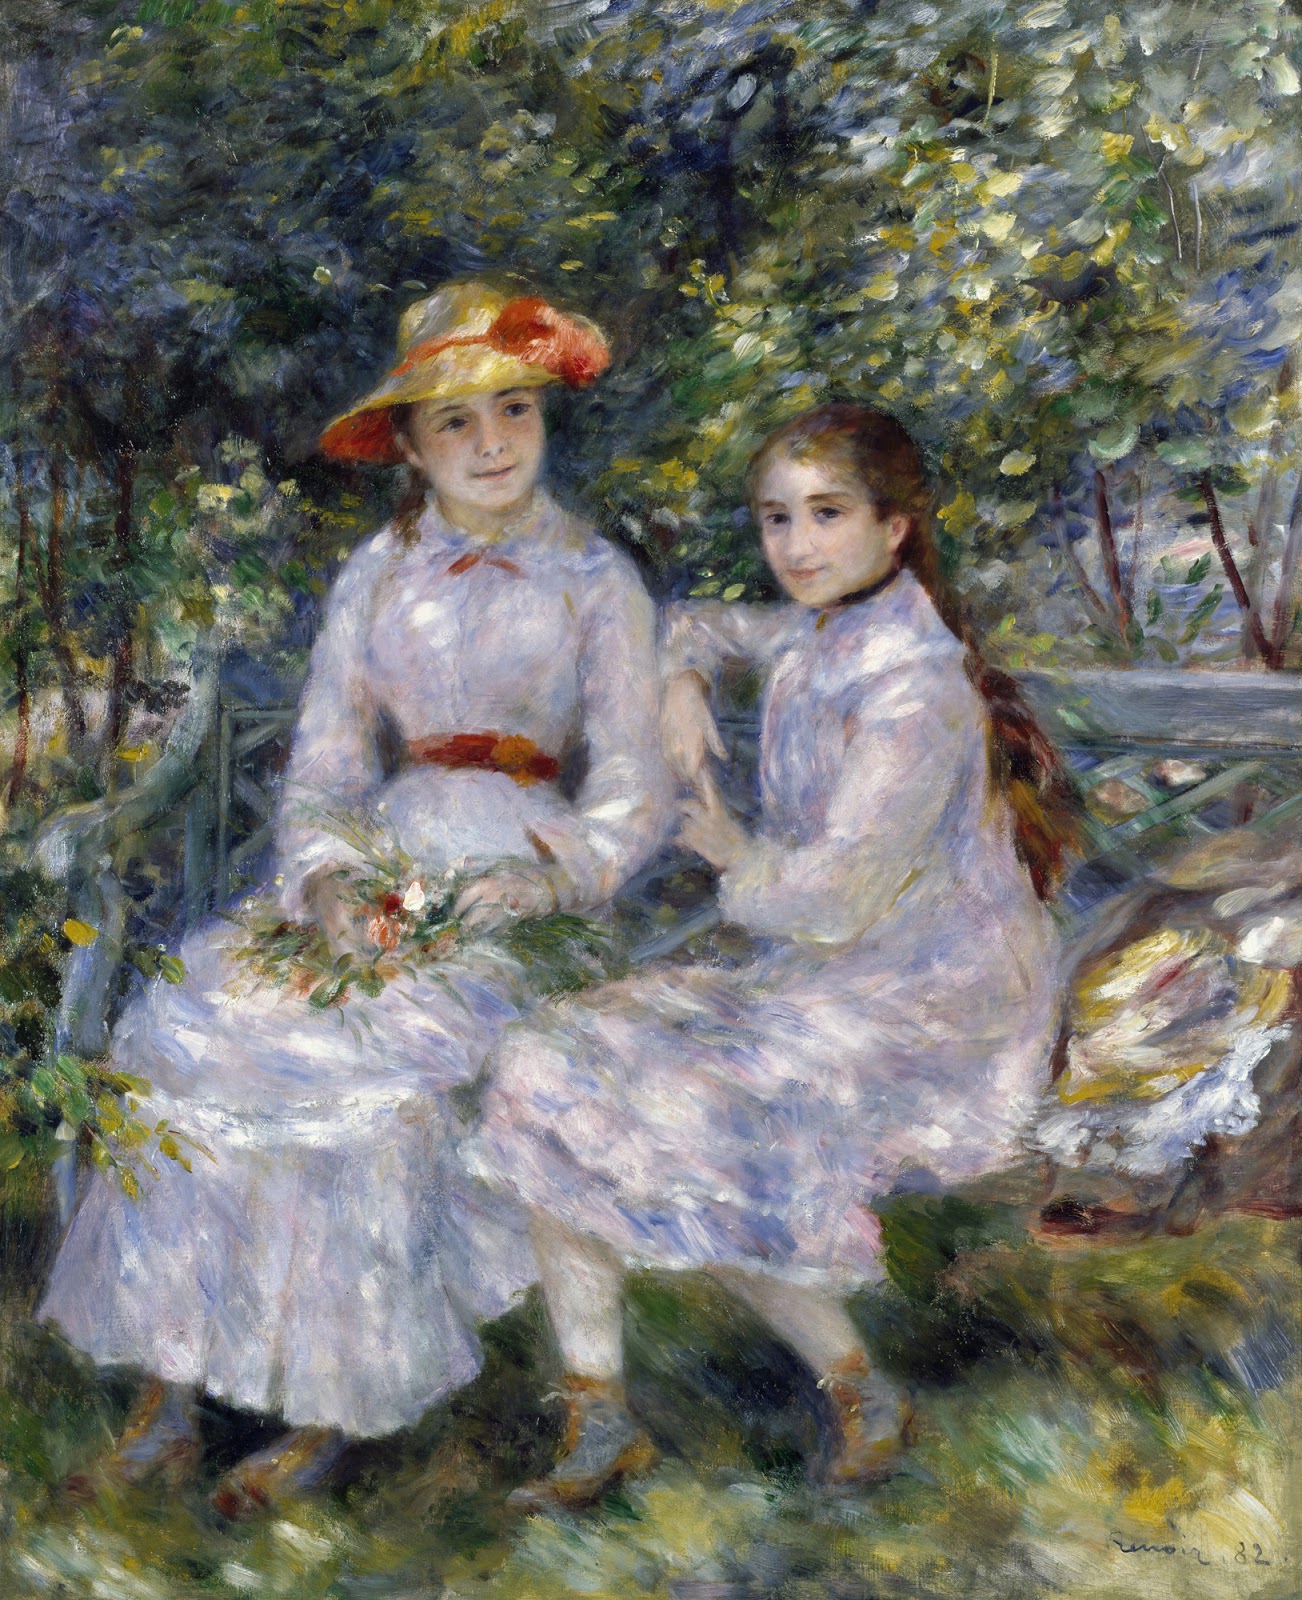 Pierre+Auguste+Renoir-1841-1-19 (874).jpg